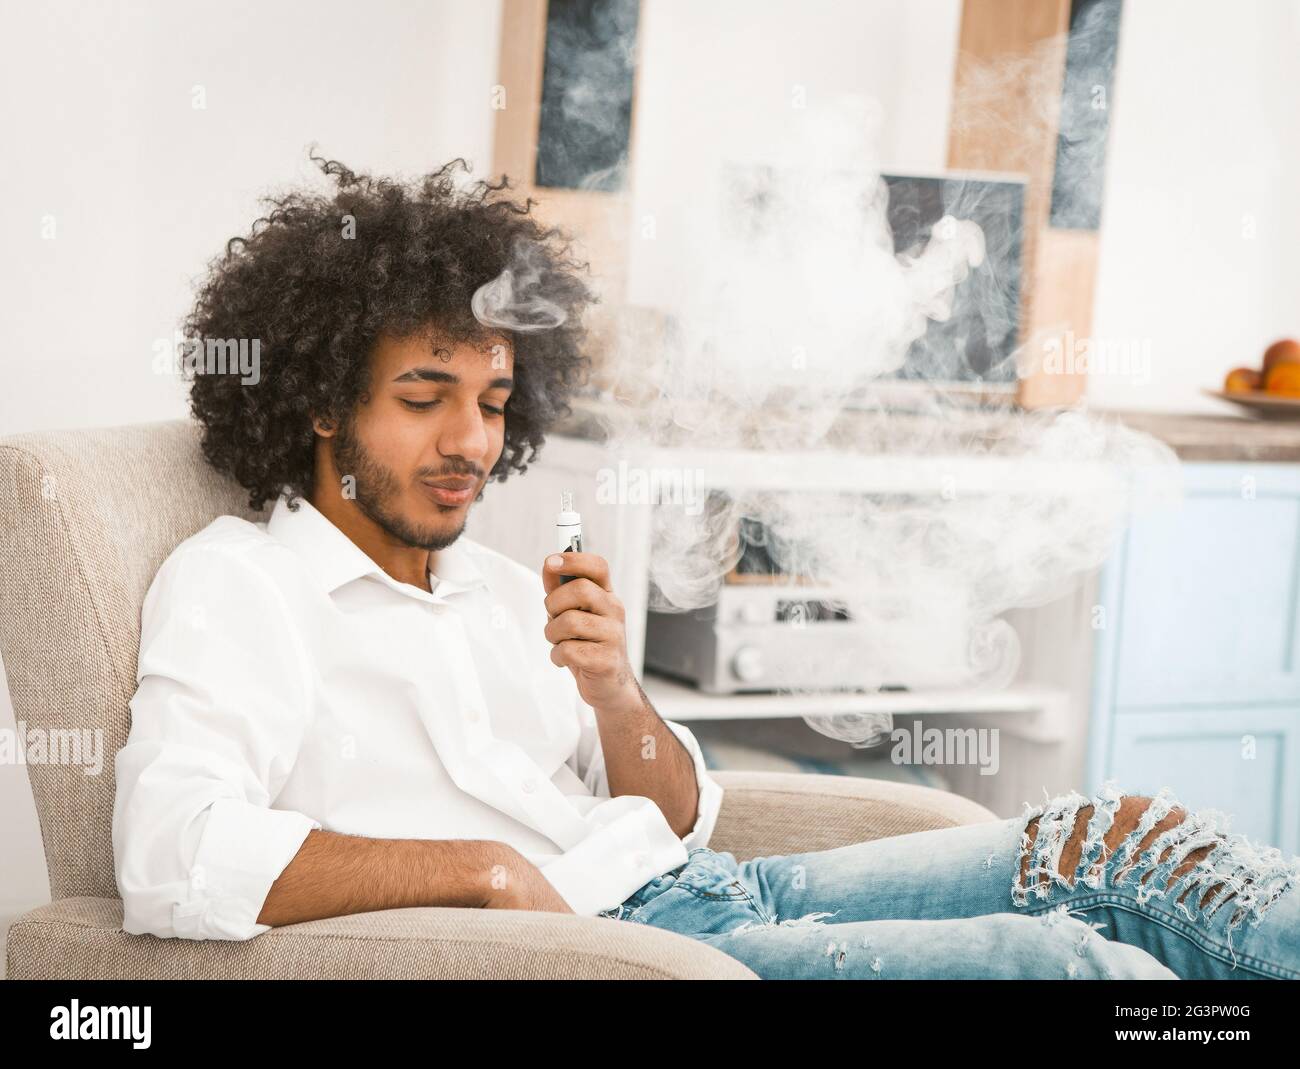 Homme barbu appréciant des bouffées de fumée de cigarette électronique. Un jeune homme dans une ambiance décontractée se repose à la maison assis dans un fauteuil et dans un fumoir Banque D'Images